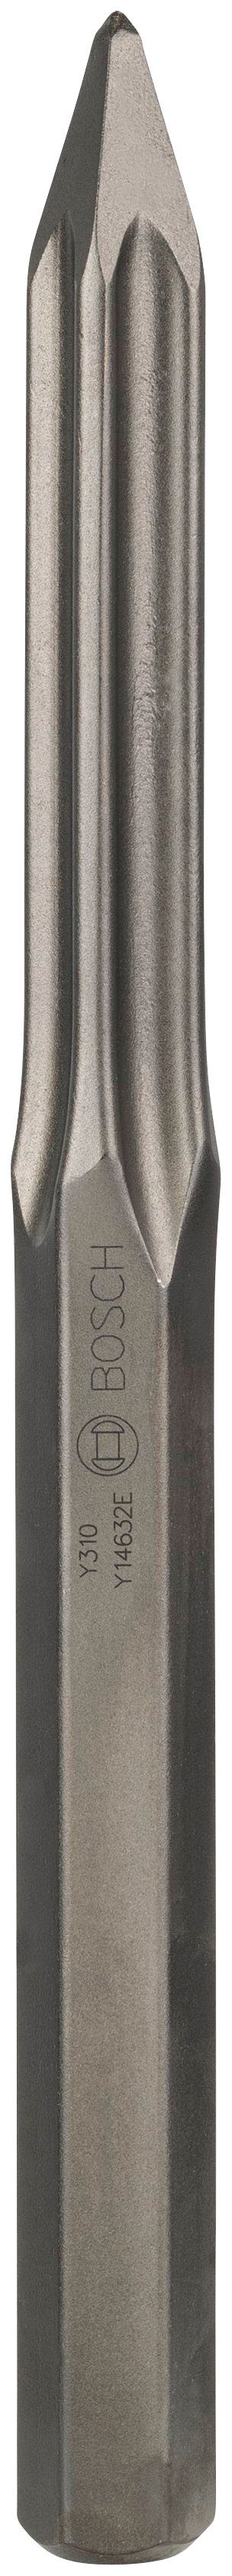 Bosch in 40 mm, mm Spitzmeißel, 400 28-mm-Sechskantaufnahme Professional